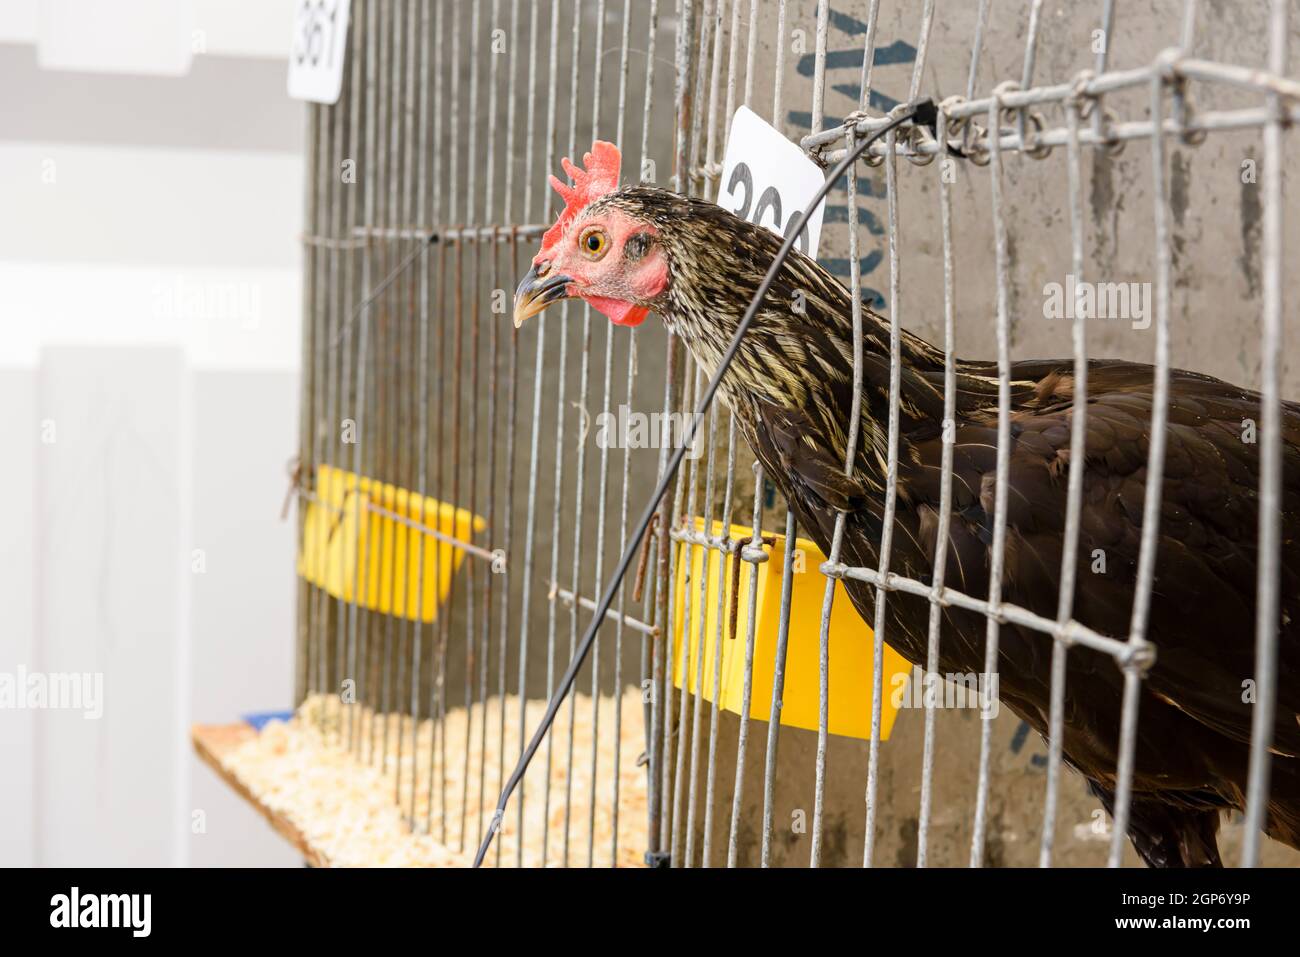 Le poulet pokes sa tête hors d'une cage lors d'une exposition de volaille Banque D'Images